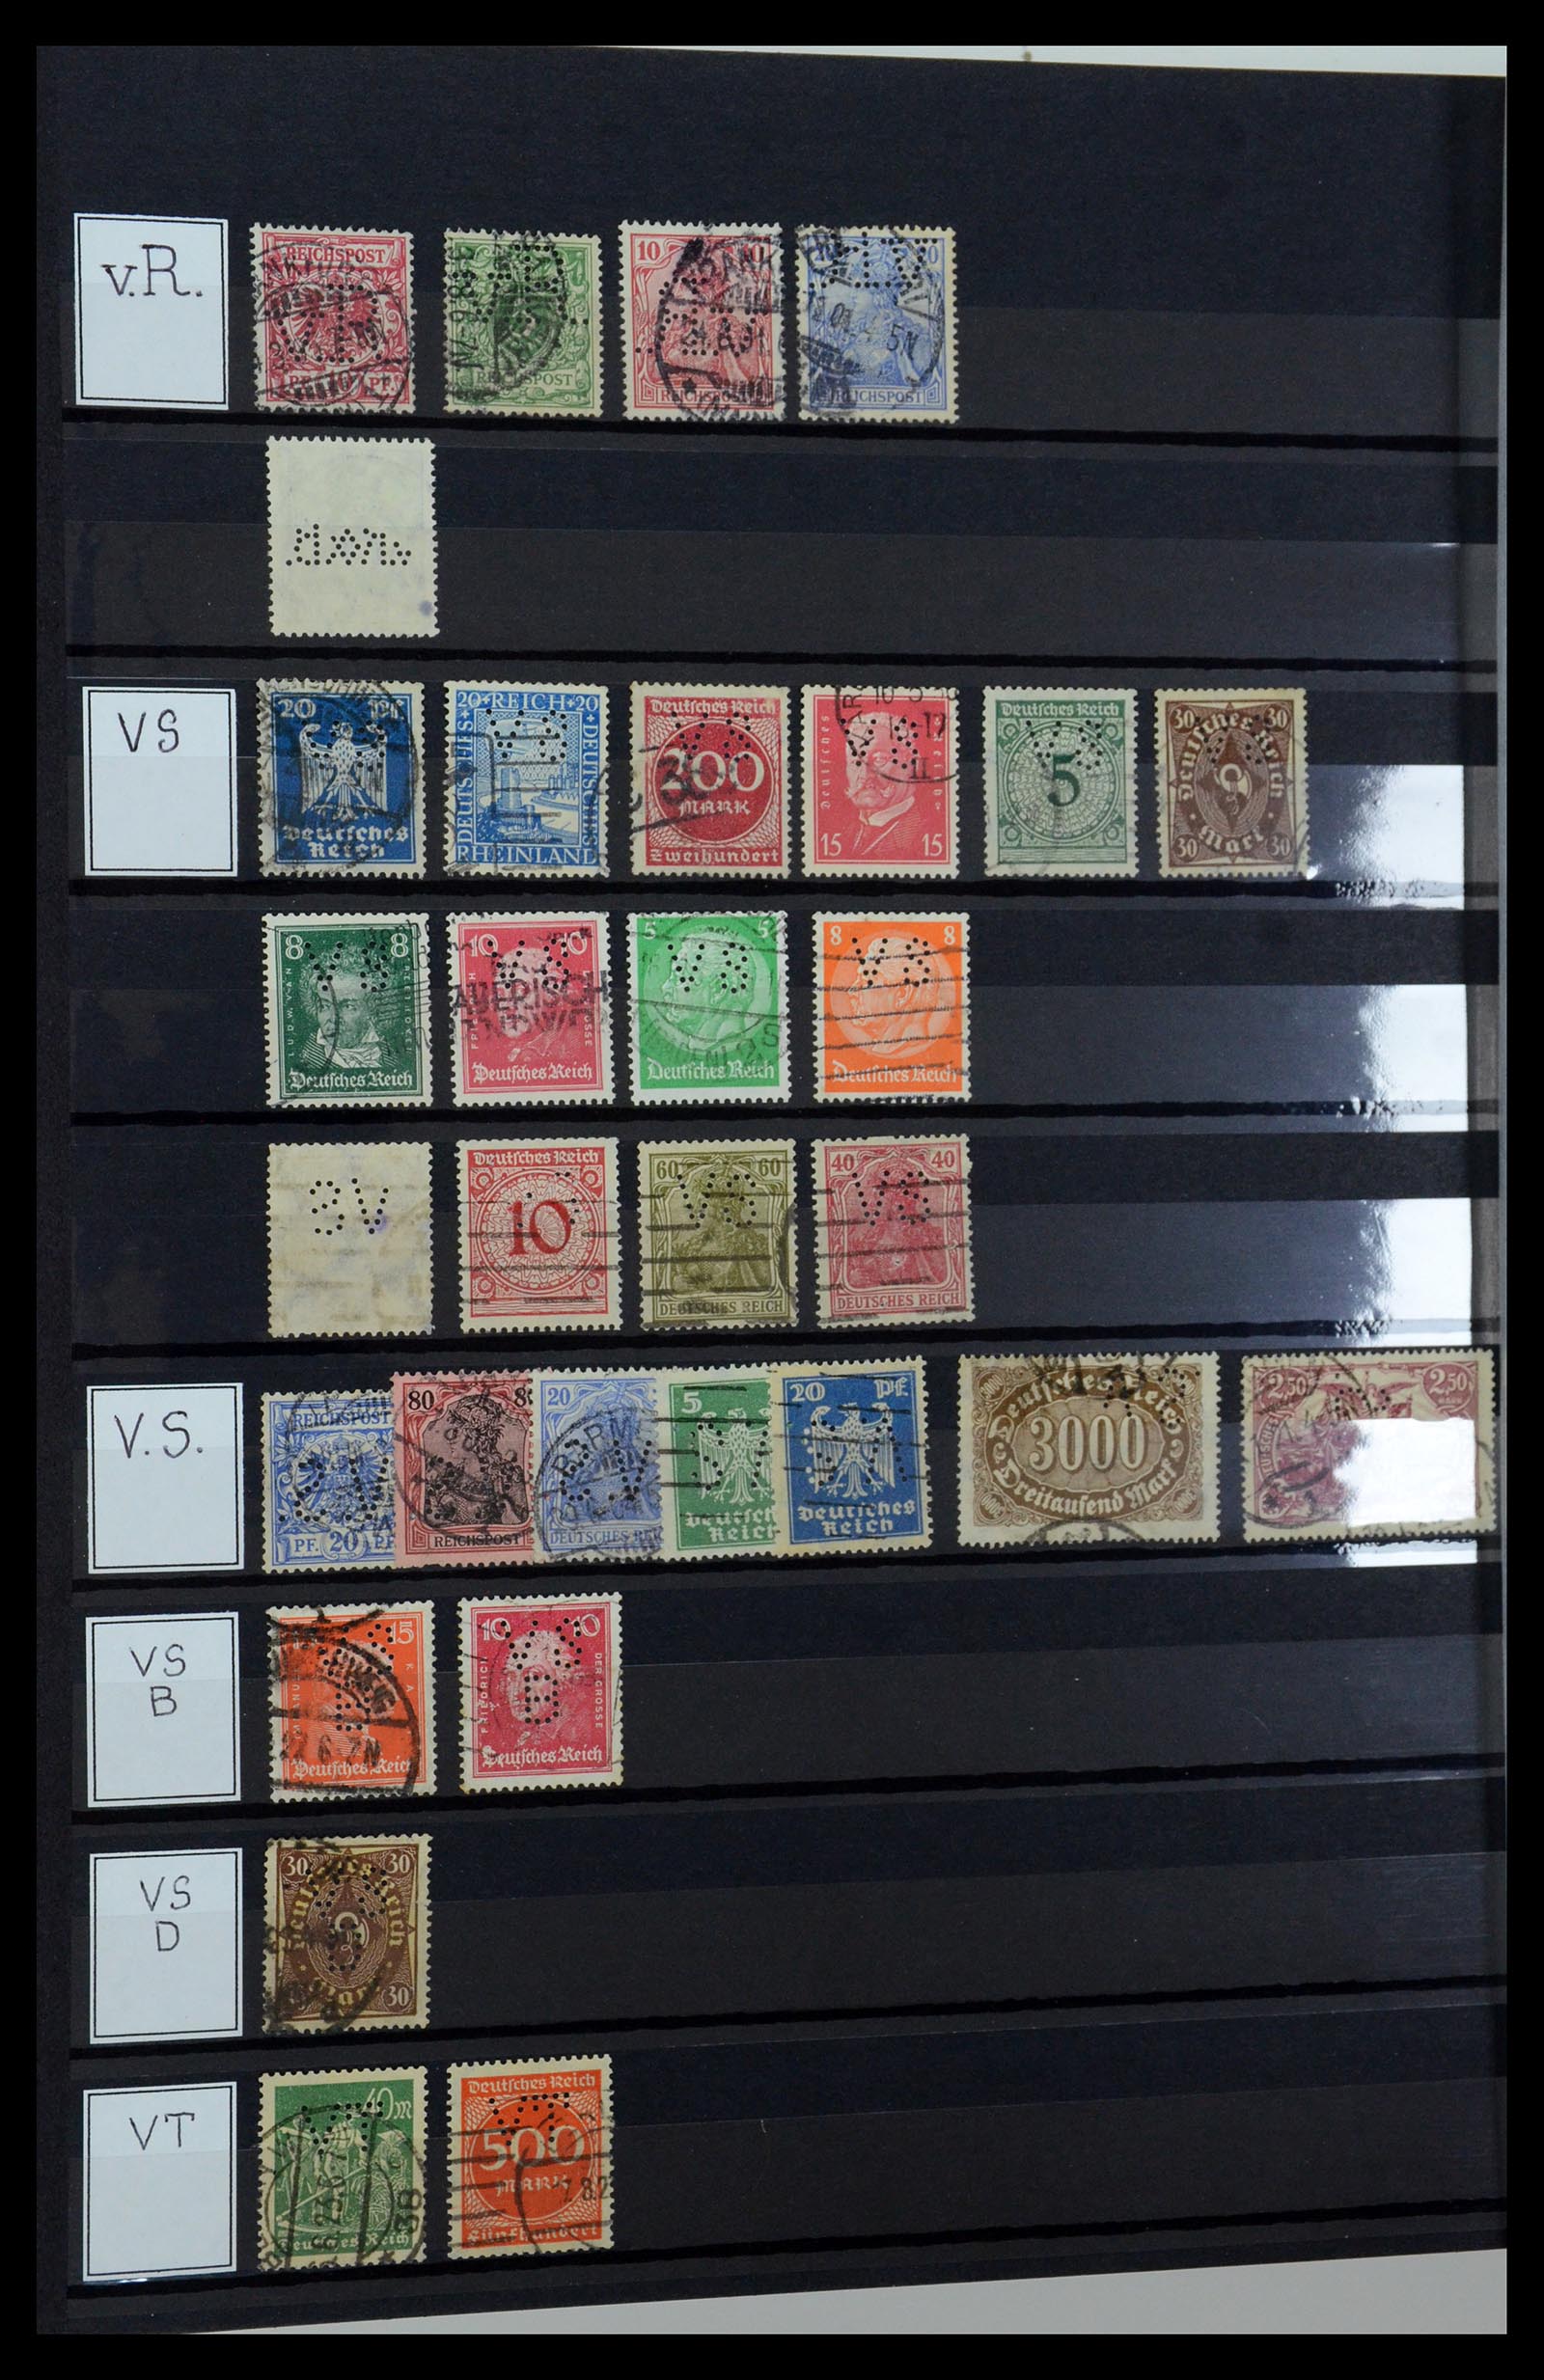 36405 331 - Stamp collection 36405 German Reich perfins 1880-1945.